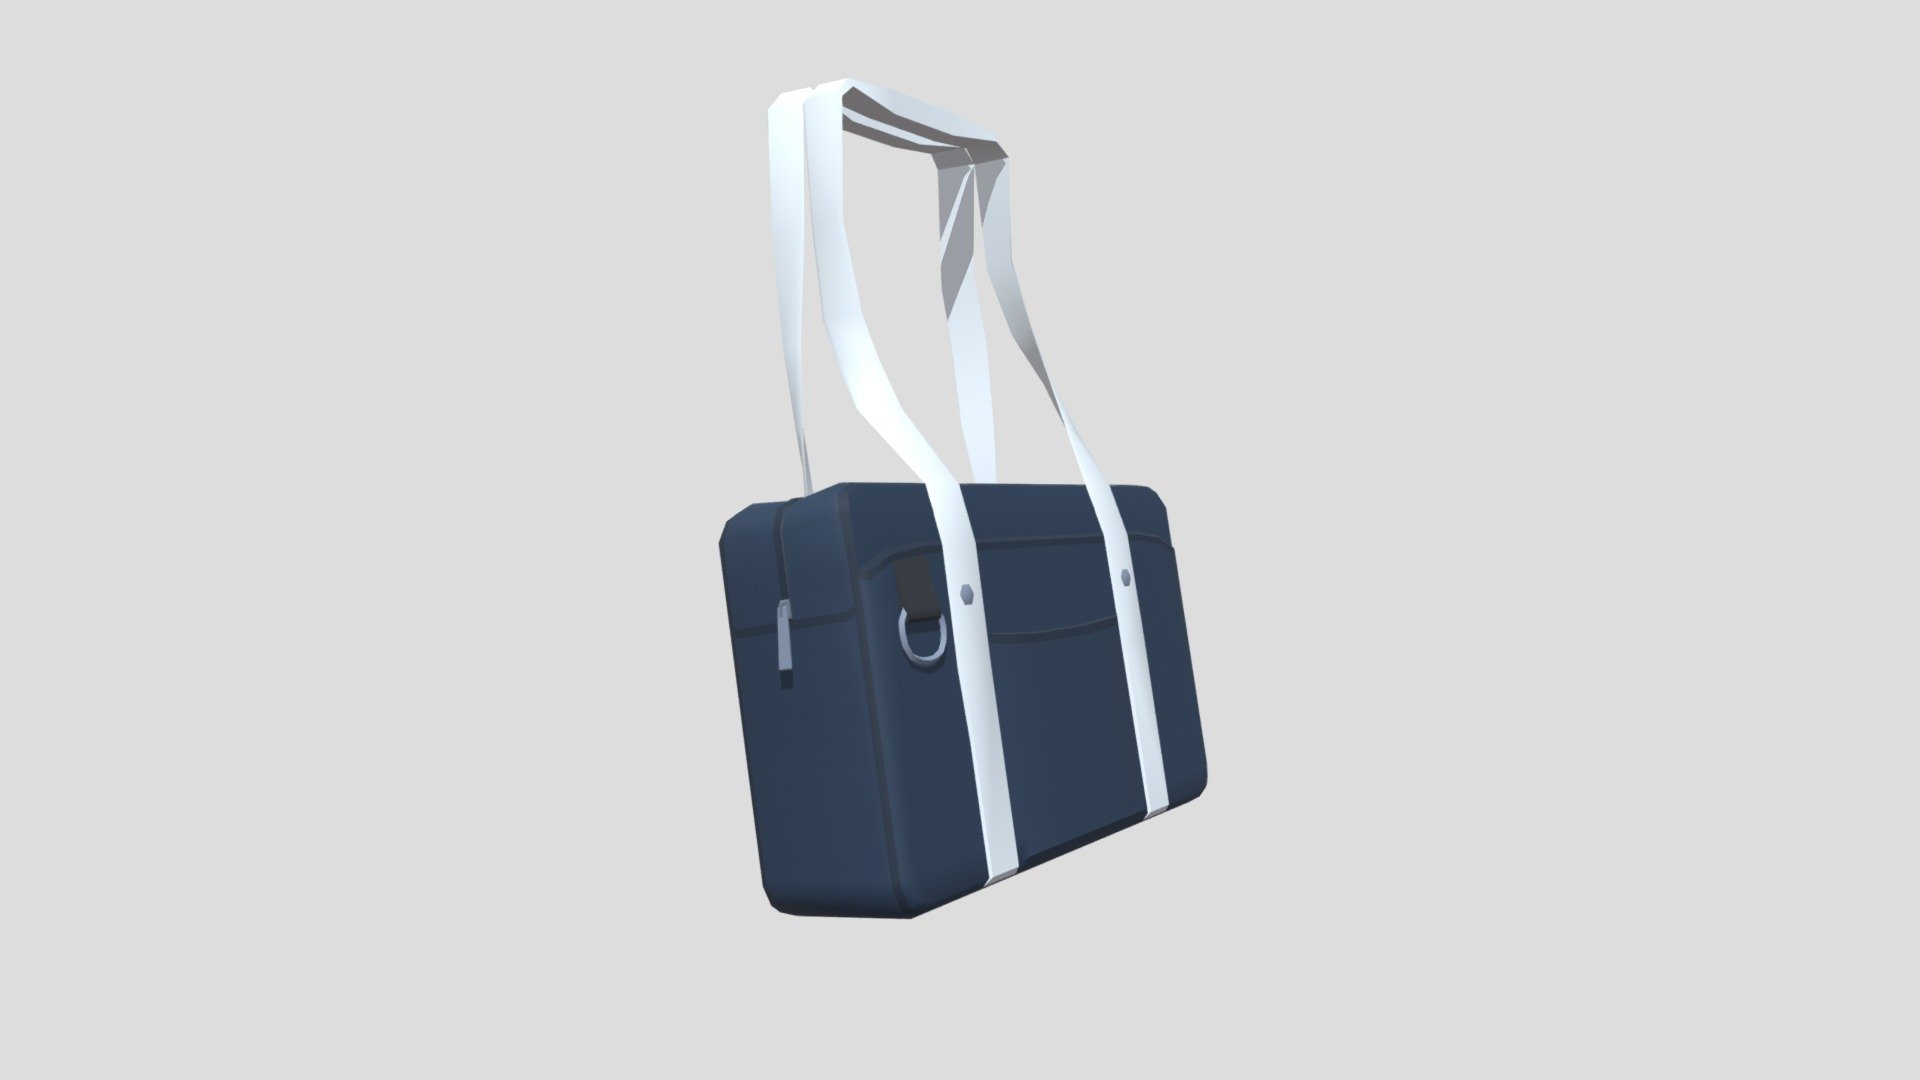 School Bag 3D Illustration download in PNG, OBJ or Blend format